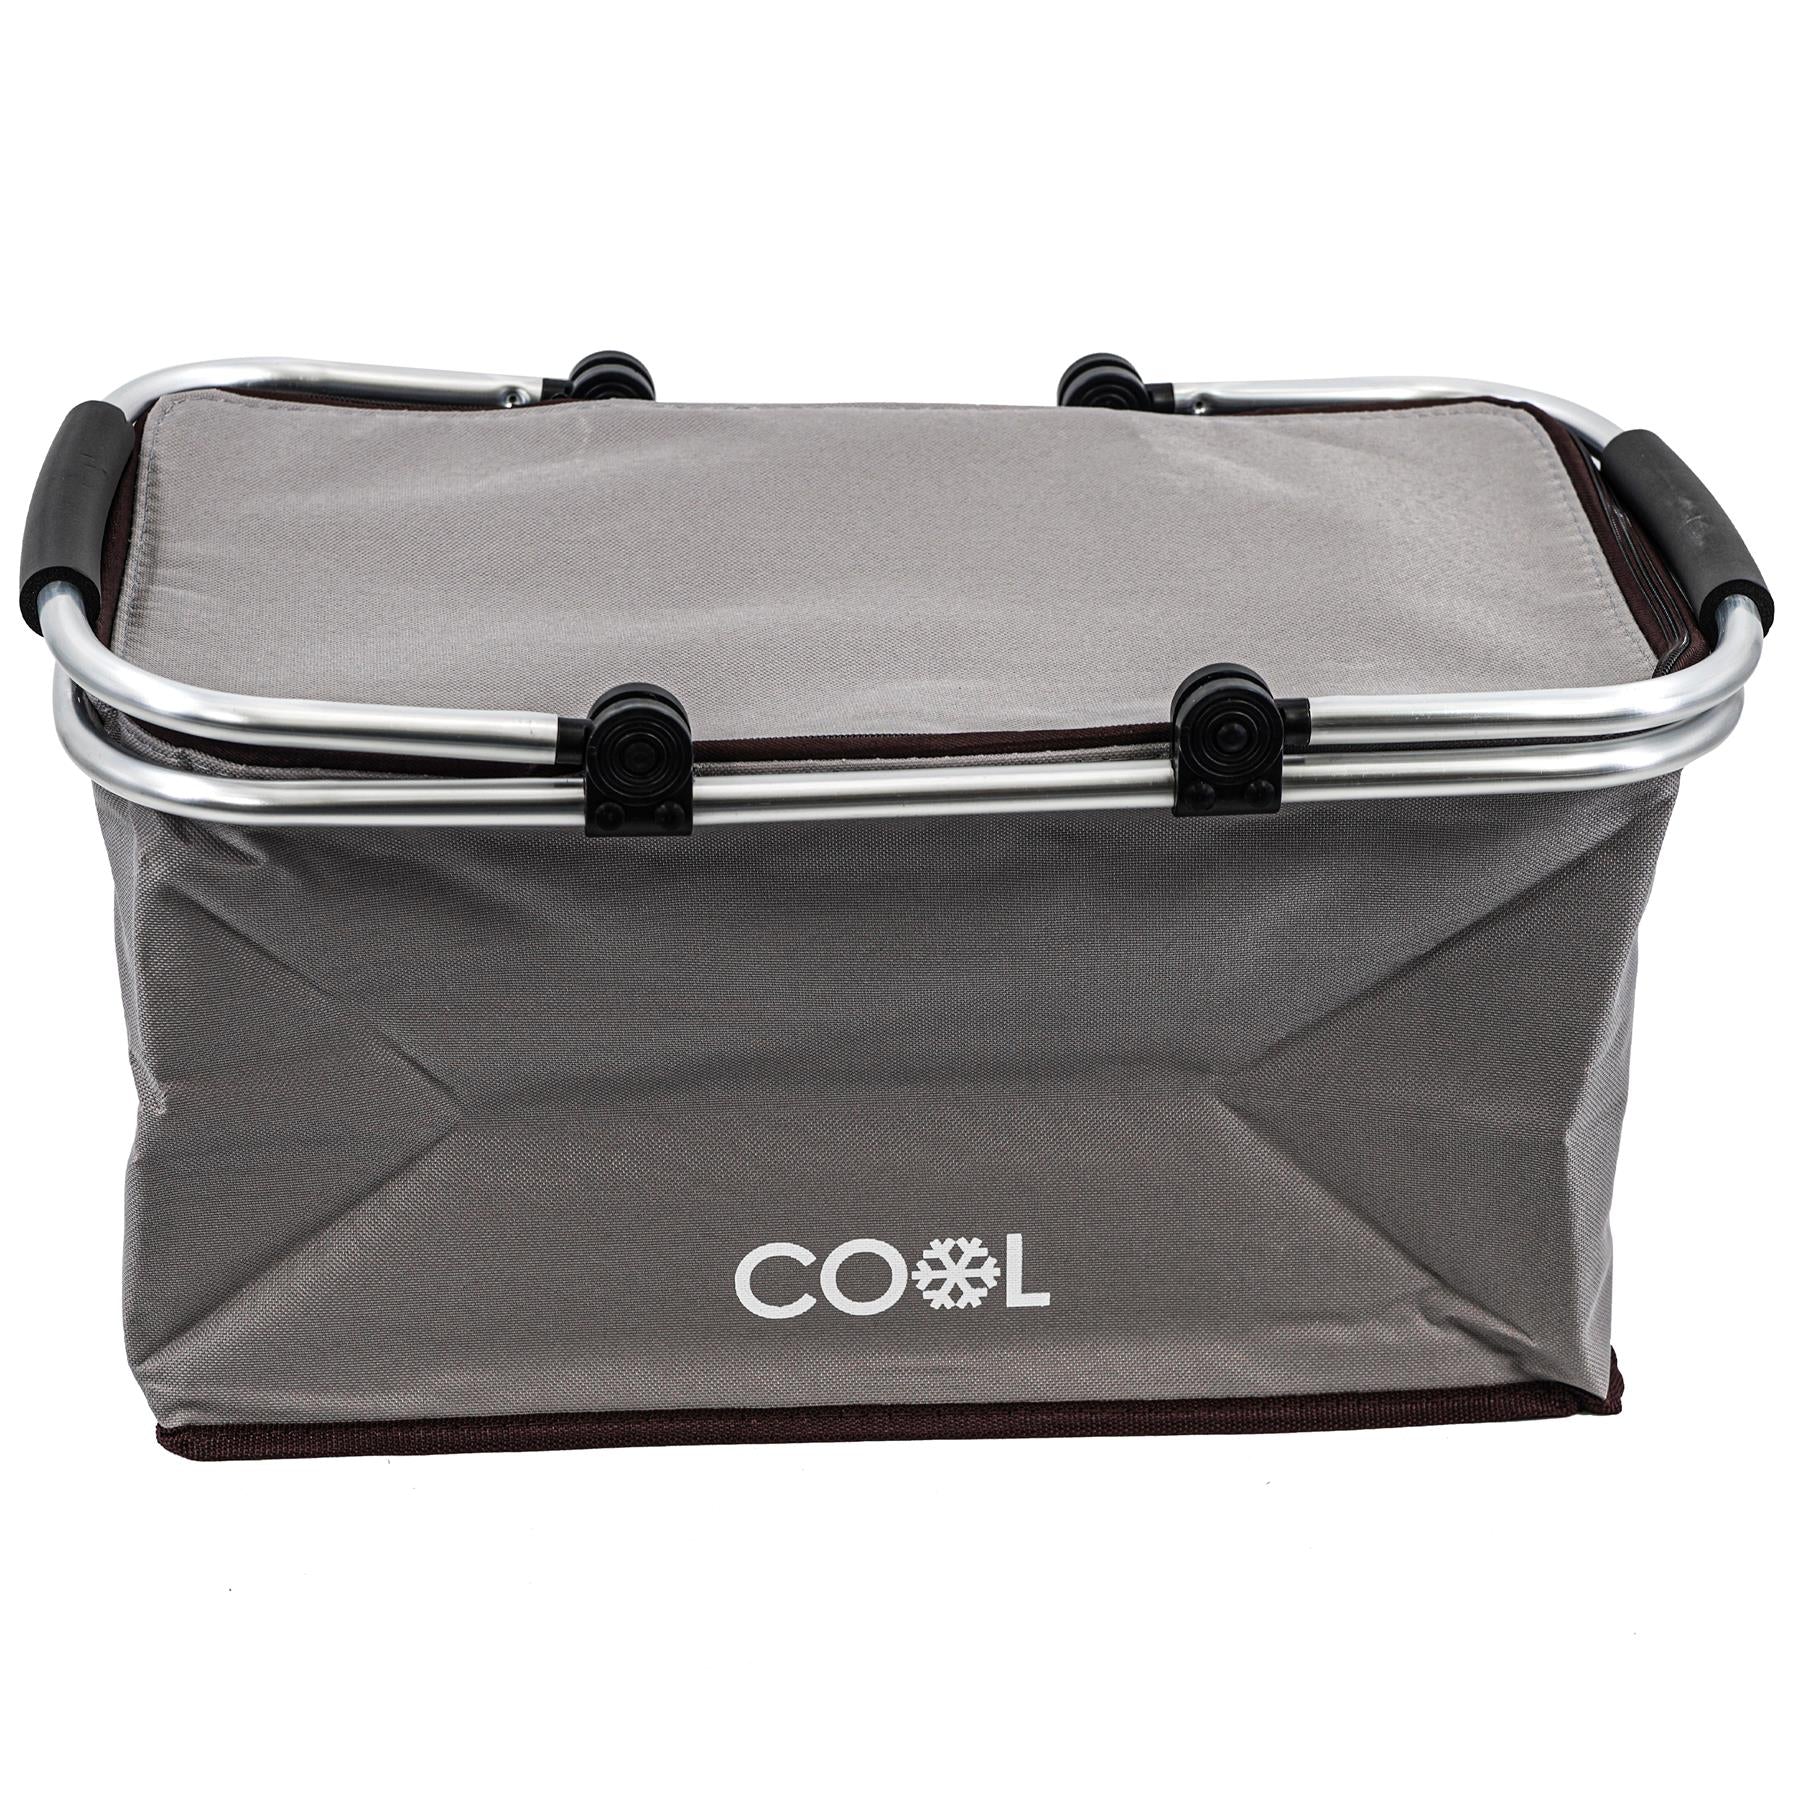 Geezy Cooler bag Grey Cooler Basket Bag